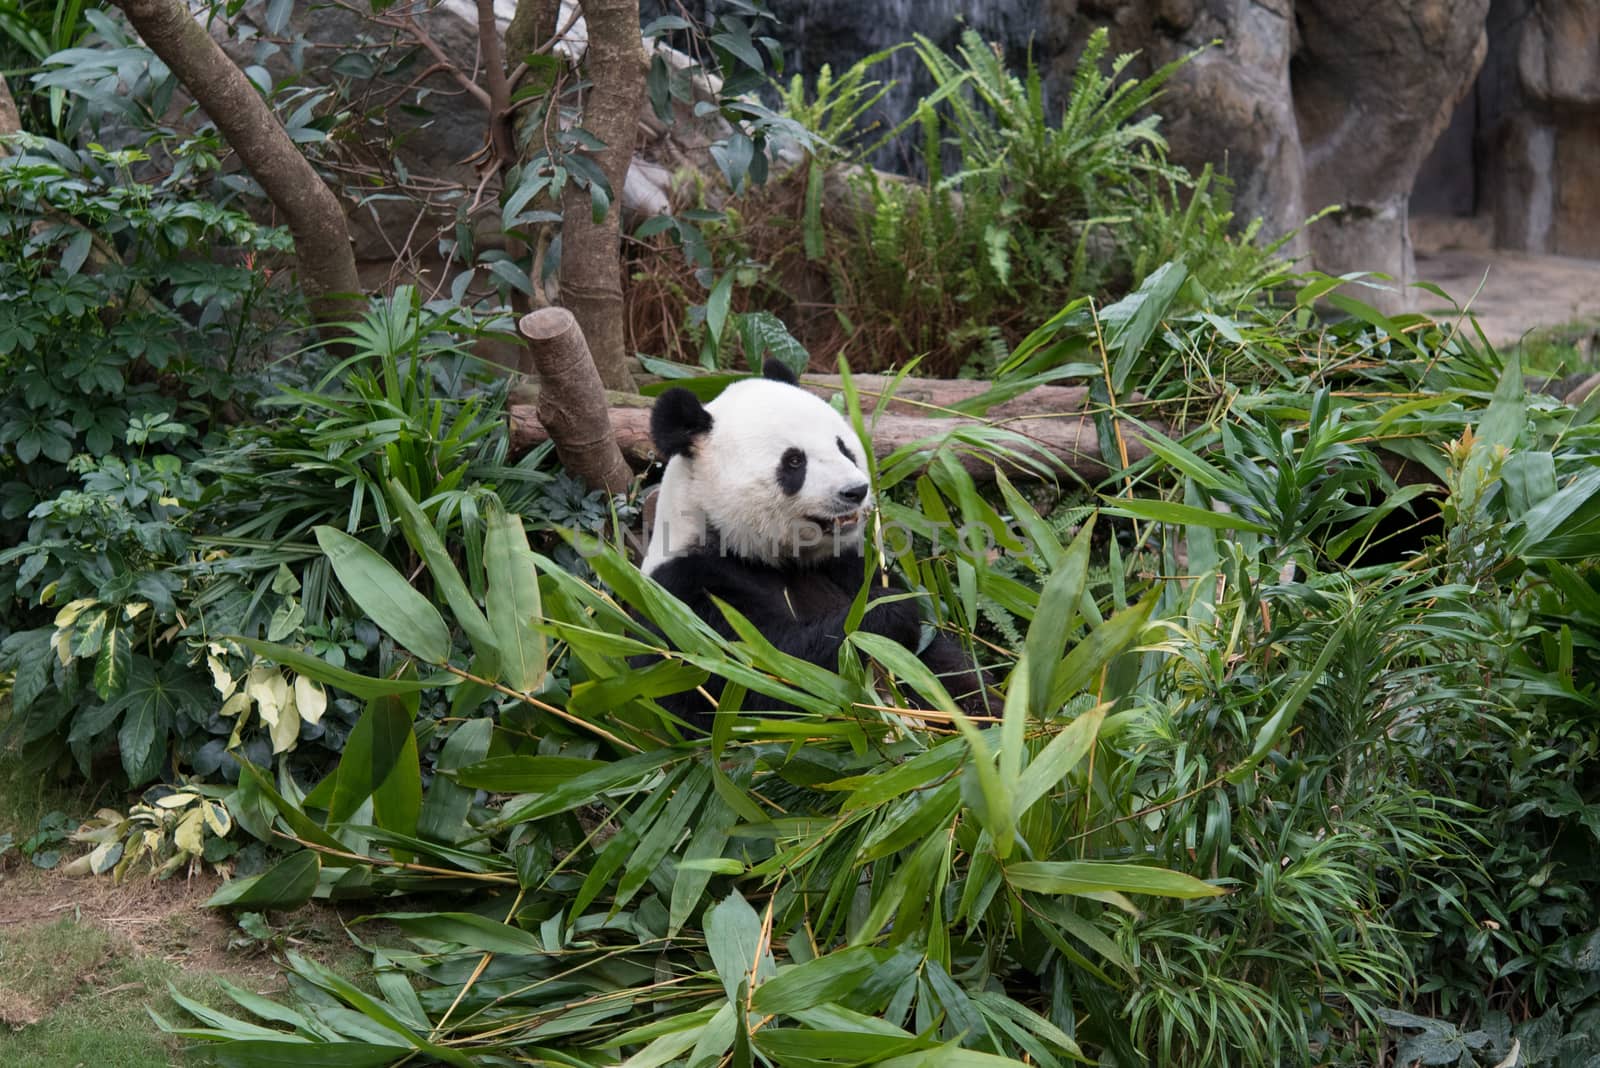 Cute giant panda (Ailuropoda melanoleuca) in wildlife